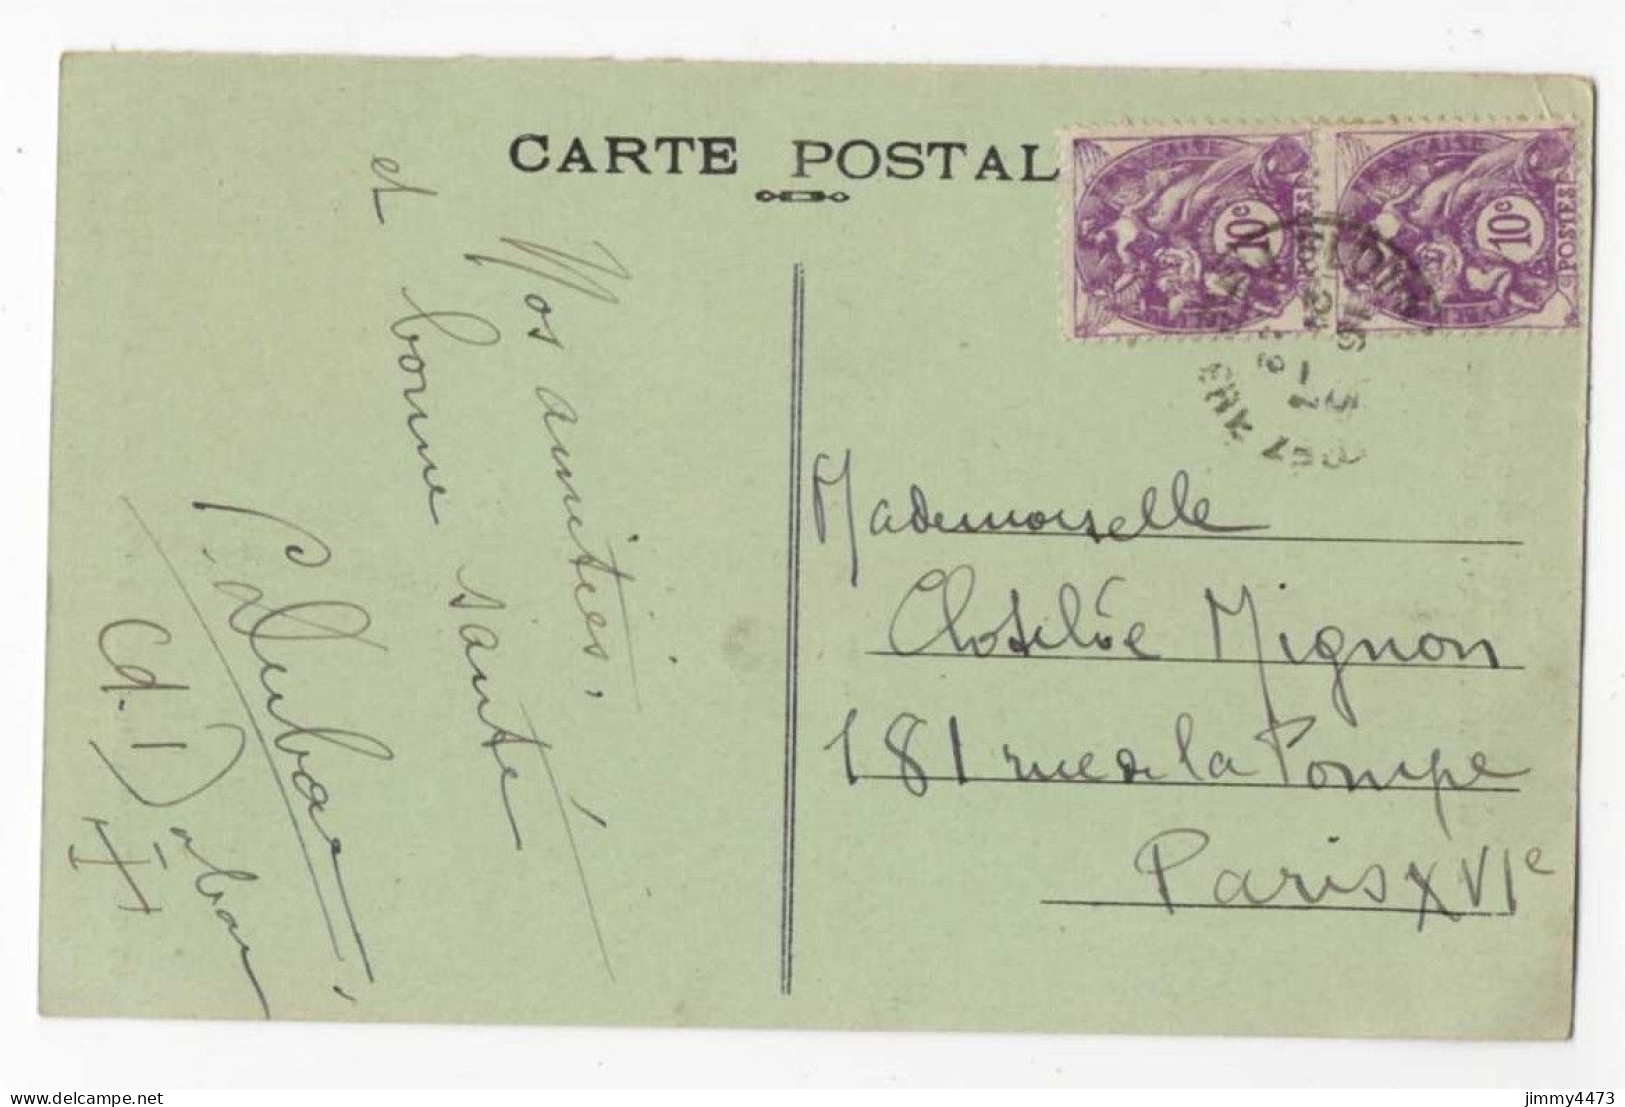 CPA - Menhir à BRIGNOGAN (F) Appelé " Men Marz " La Pierre Du Miracle - N°107 - Coll. Hamonic - Dolmen & Menhire